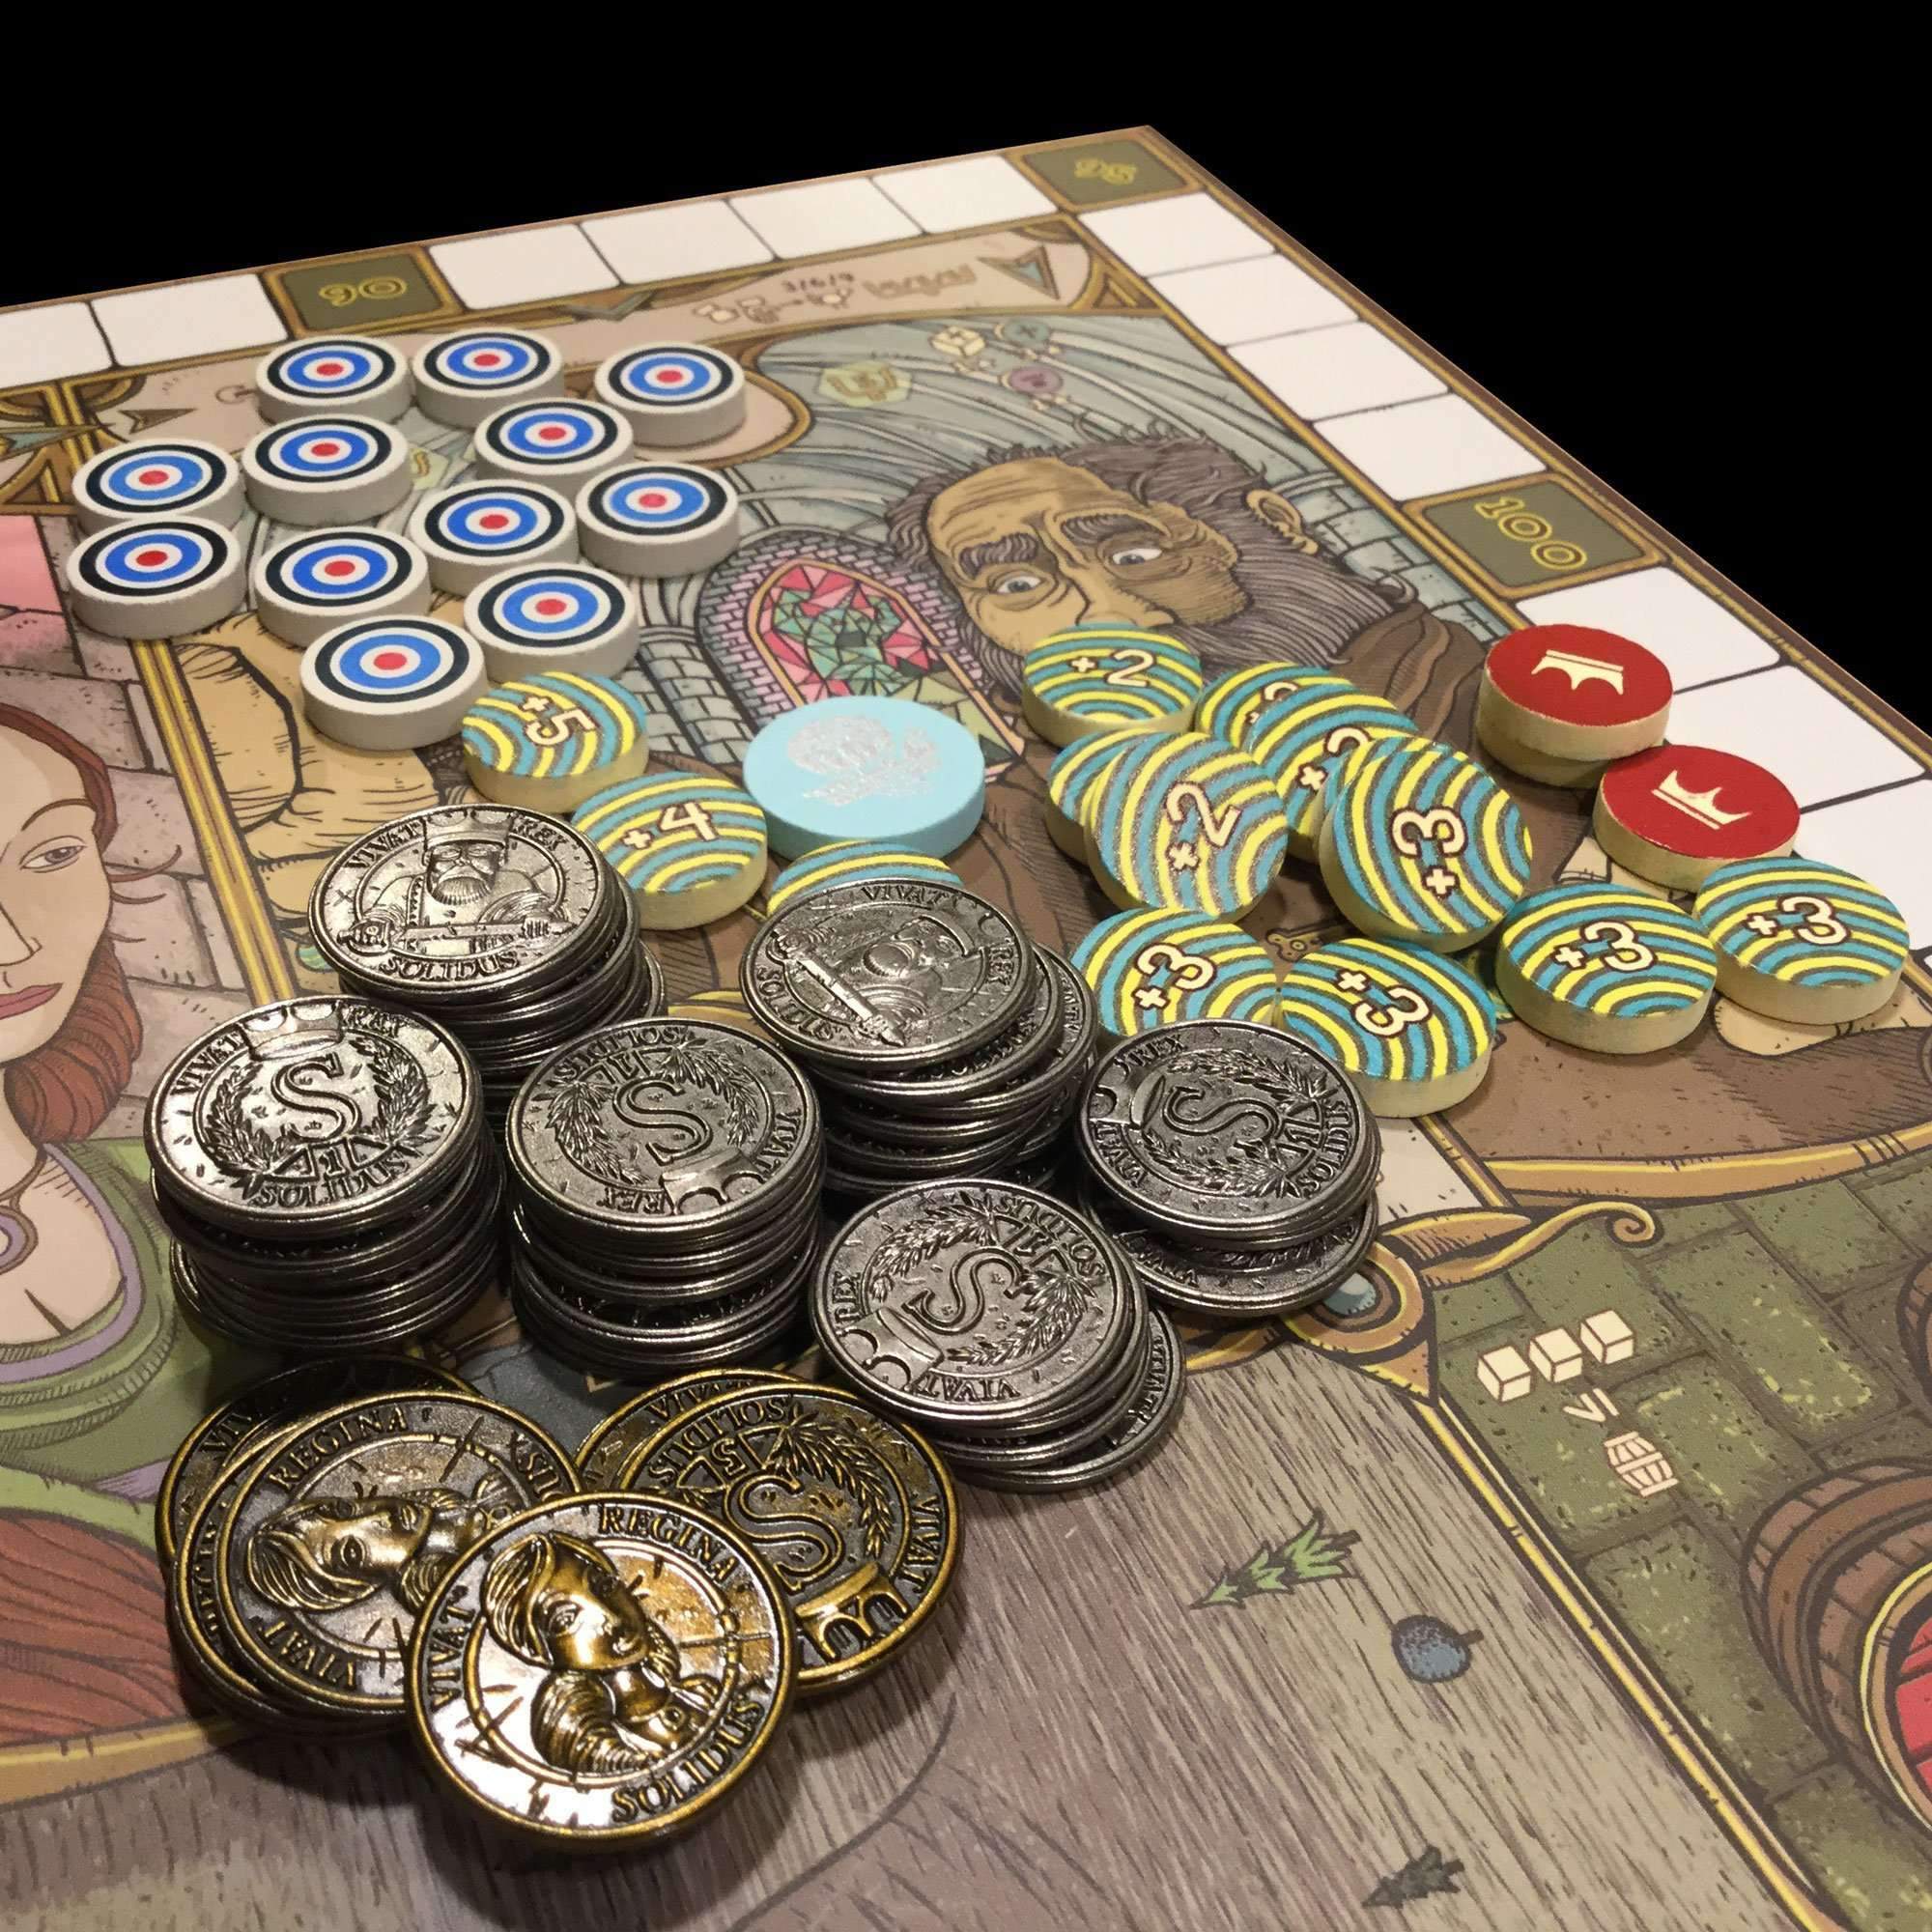 Monedas de metal feudum, sellos de lujo, cuentas y marcadores Bundle (Kickstarter Special) Suplemento del juego de mesa Kickstarter Odd Bird Games